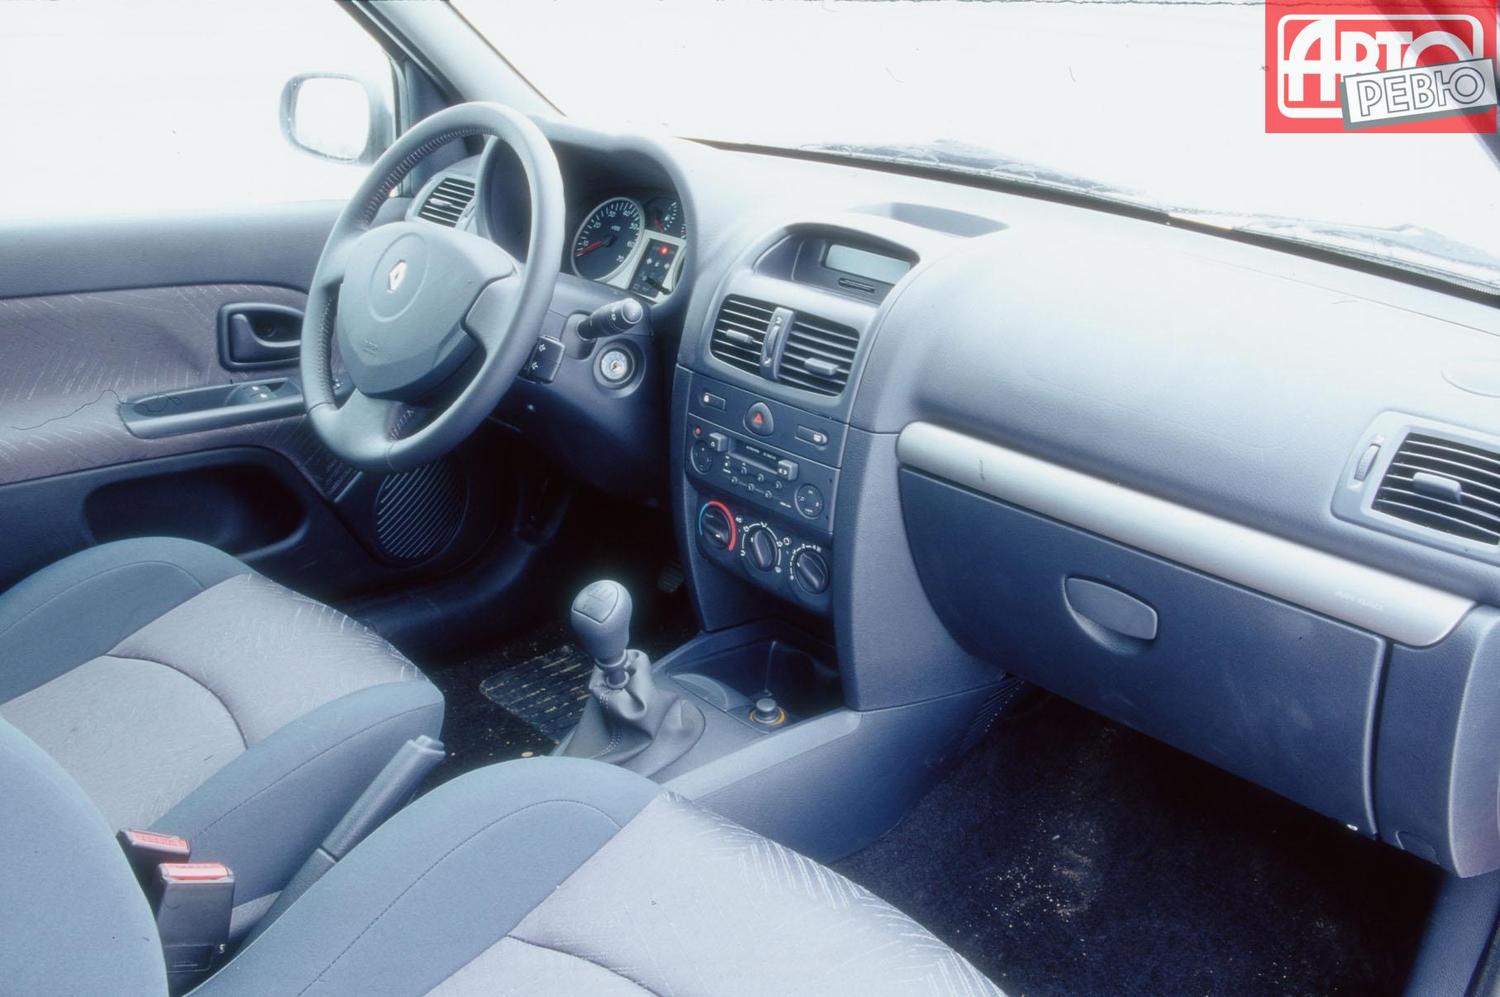 хэтчбек 3 дв. Renault Clio 2001 - 2003г выпуска модификация 1.1 AT (75 л.с.)